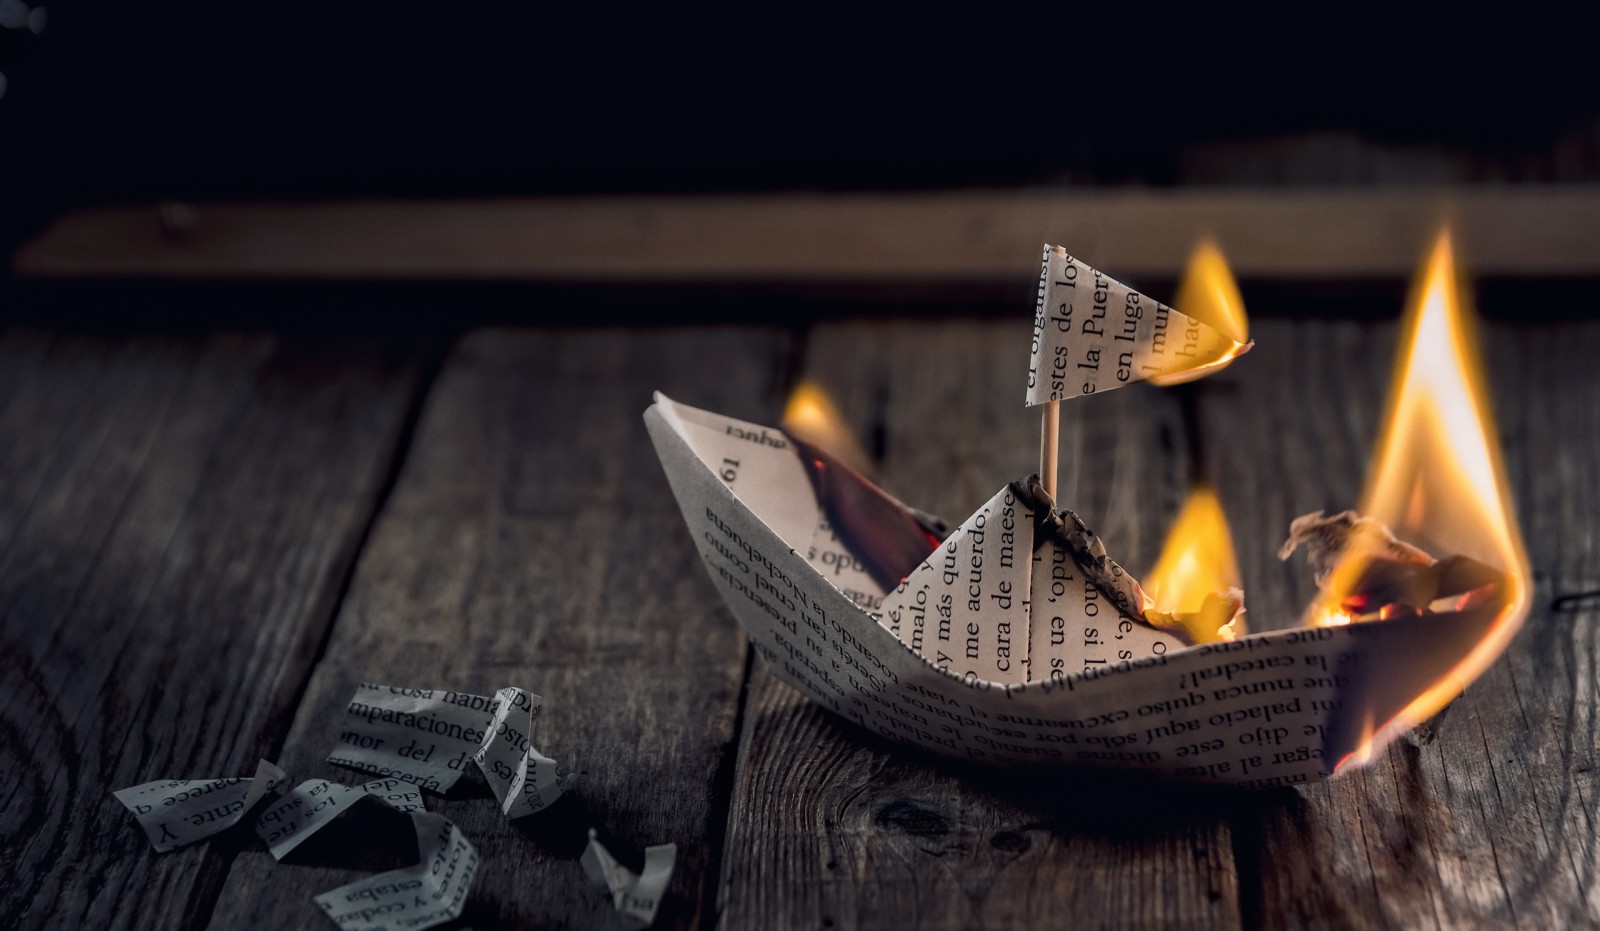 thuyền, ngọn lửa, giấy